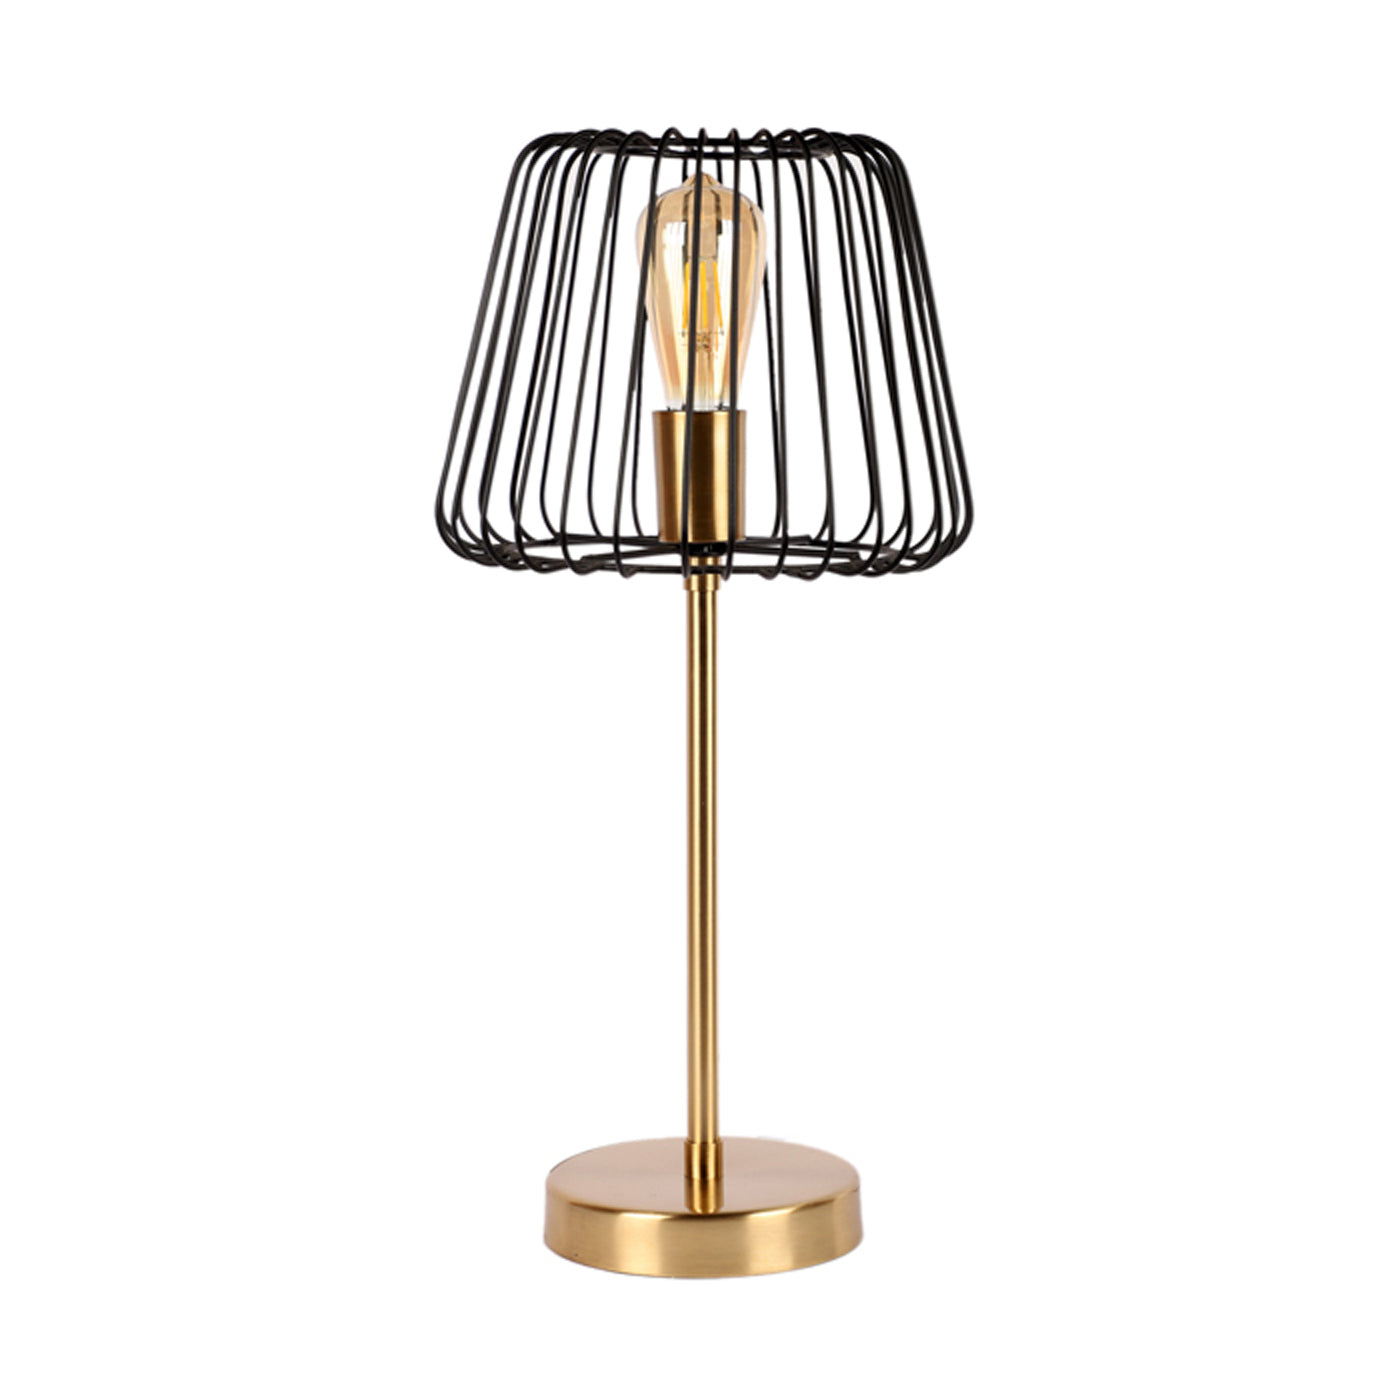 The "Imprisoned Bulb Lamp" black and gold Matt Brass finish table lamp